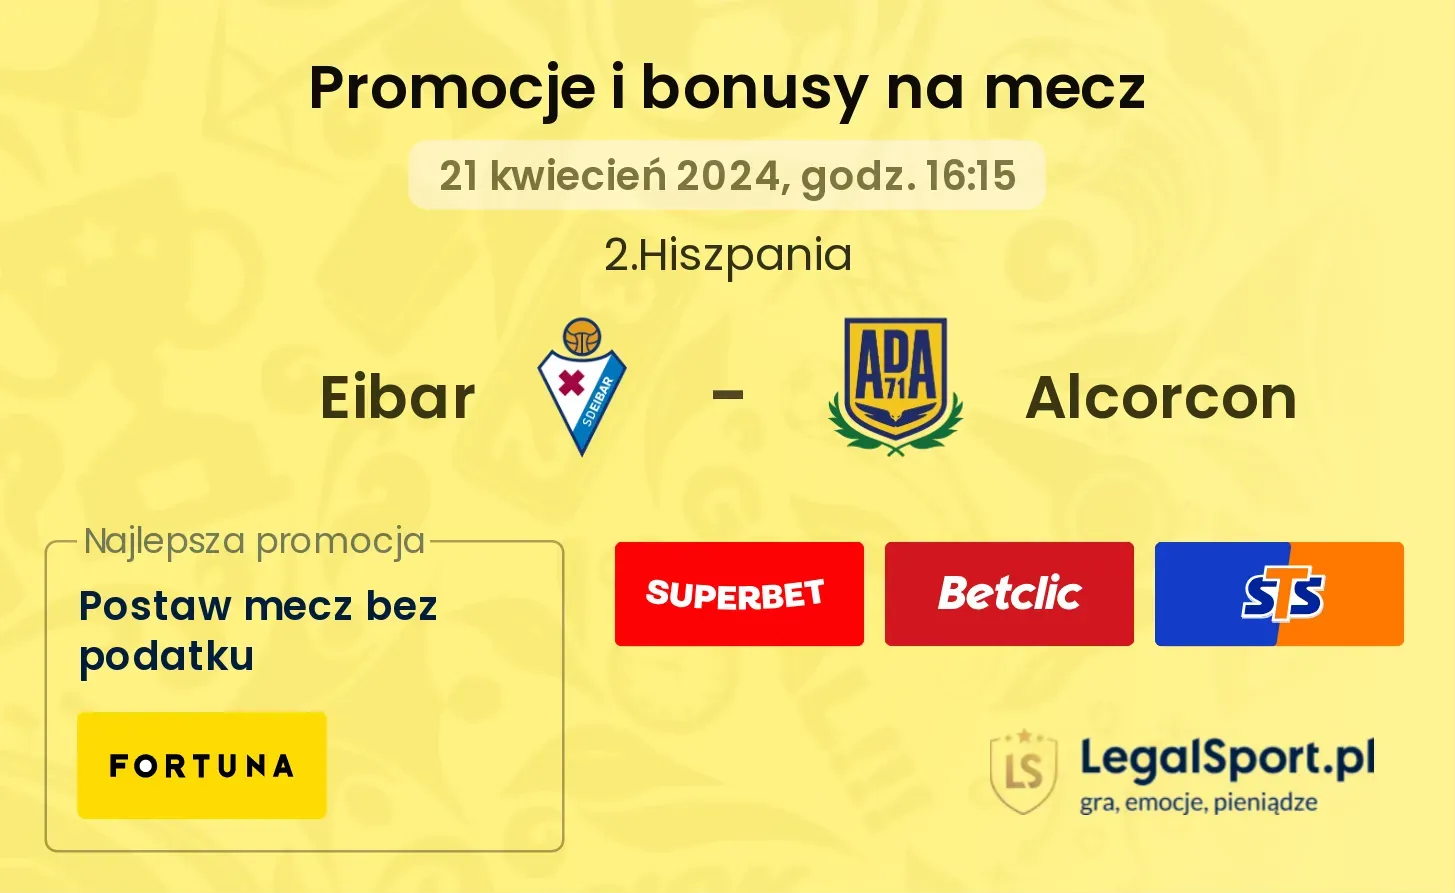 Eibar - Alcorcon promocje bonusy na mecz